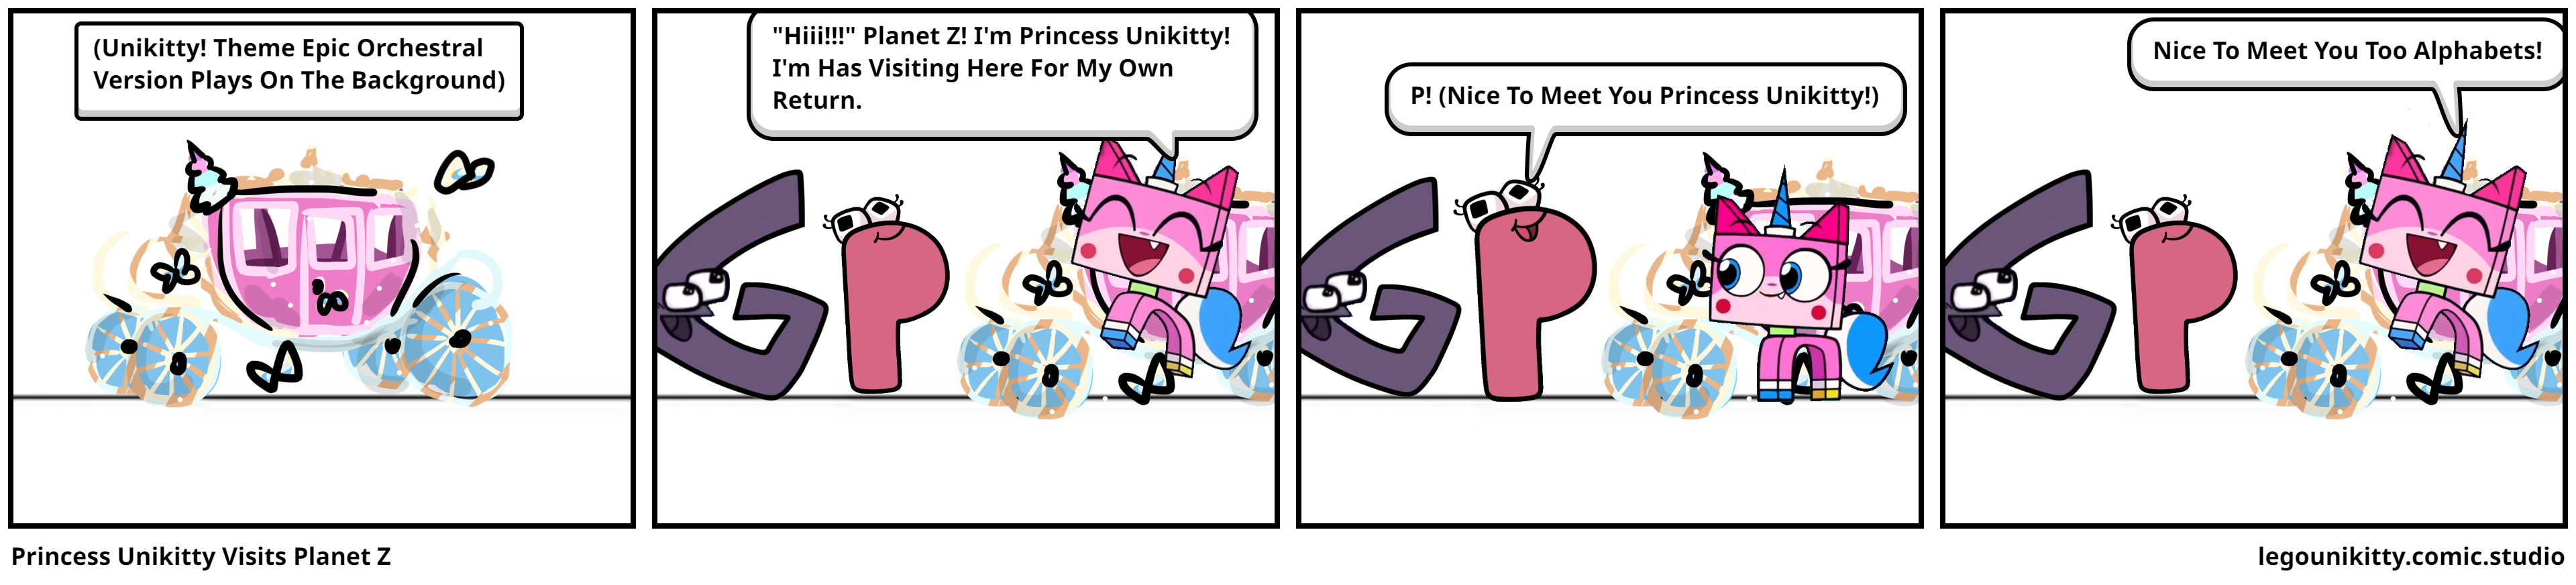 Princess Unikitty Visits Planet Z